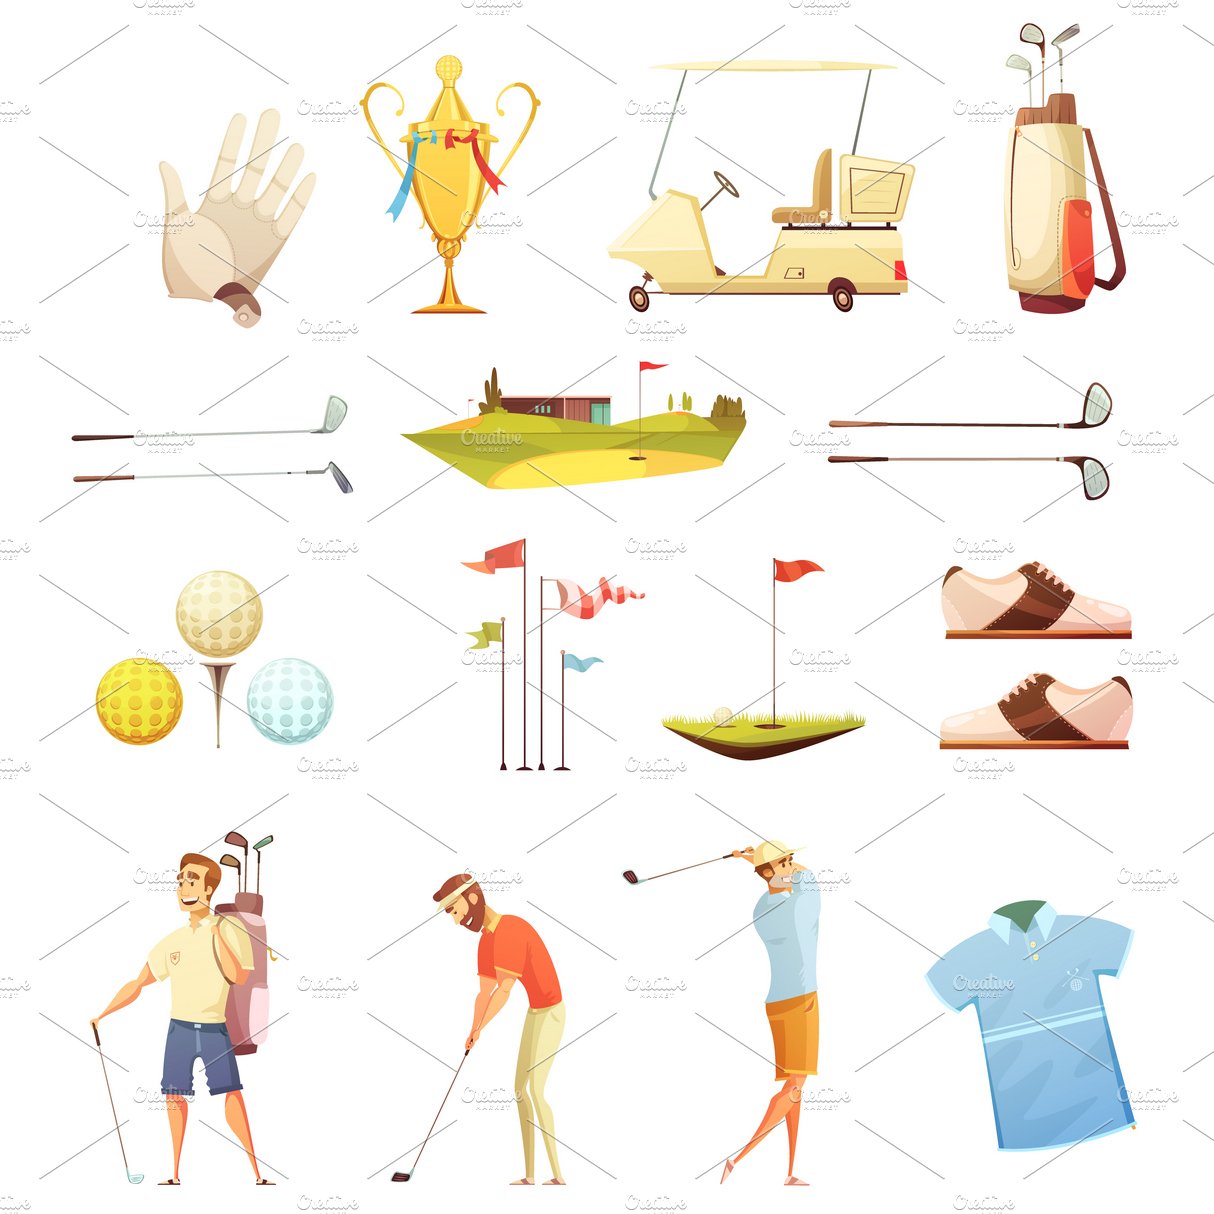 Golf retro cartoon icons cover image.